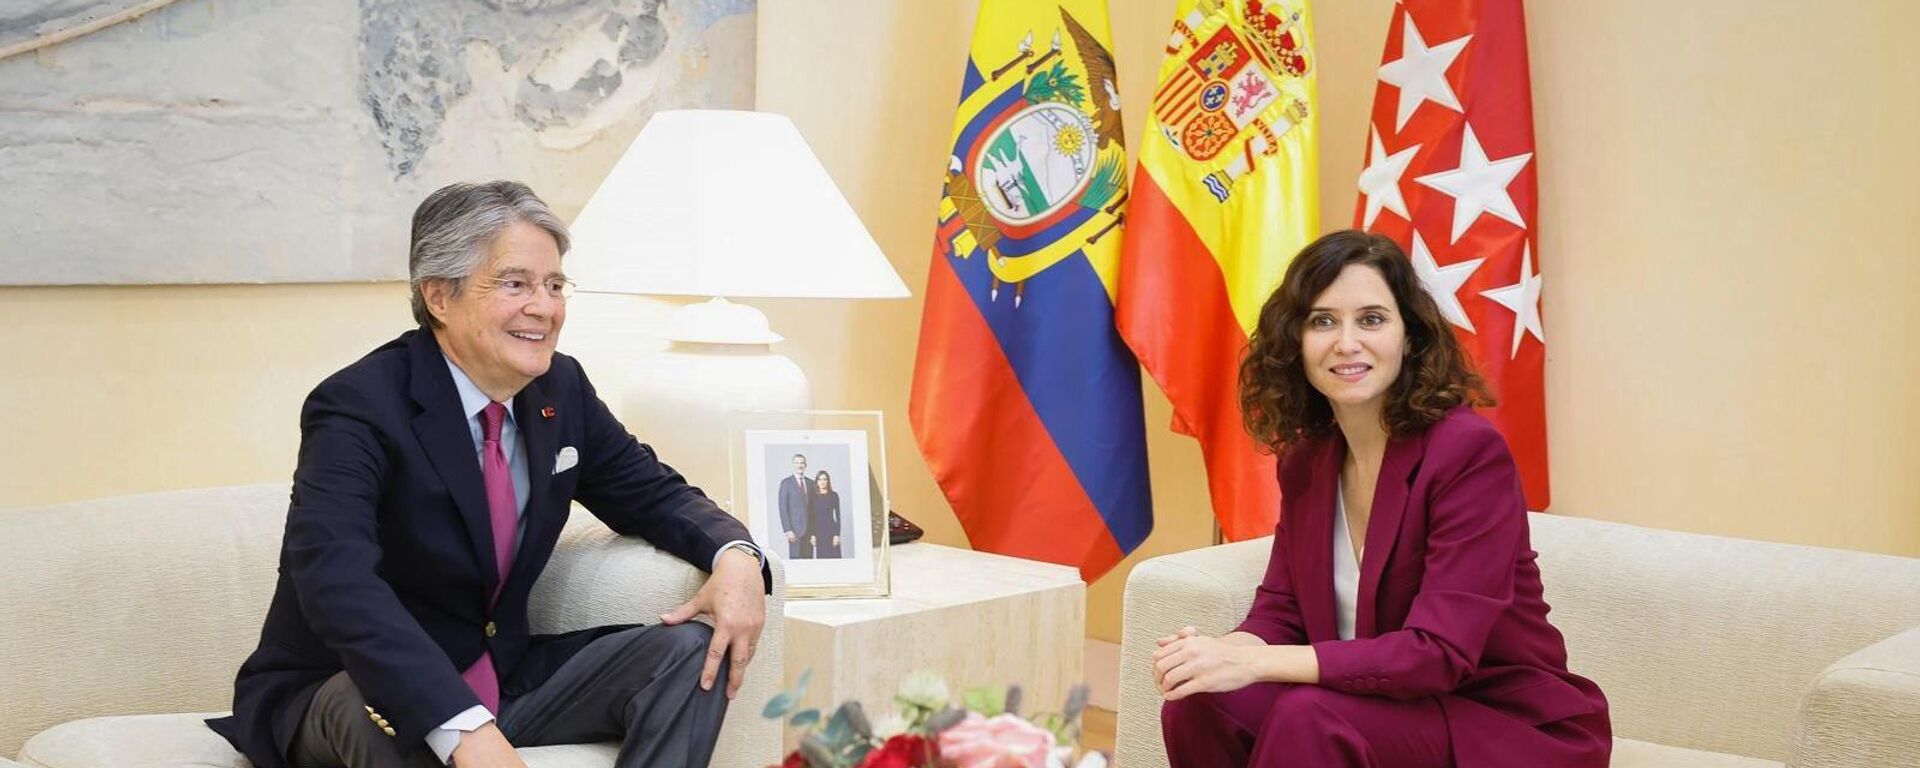 El presidente de Ecuador, Guillermo Lasso, inició su agenda en España, la primera escala de la gira, con una reunión con Isabel Díaz Ayuso, presidenta de la Comunidad de Madrid - Sputnik Mundo, 1920, 14.07.2023